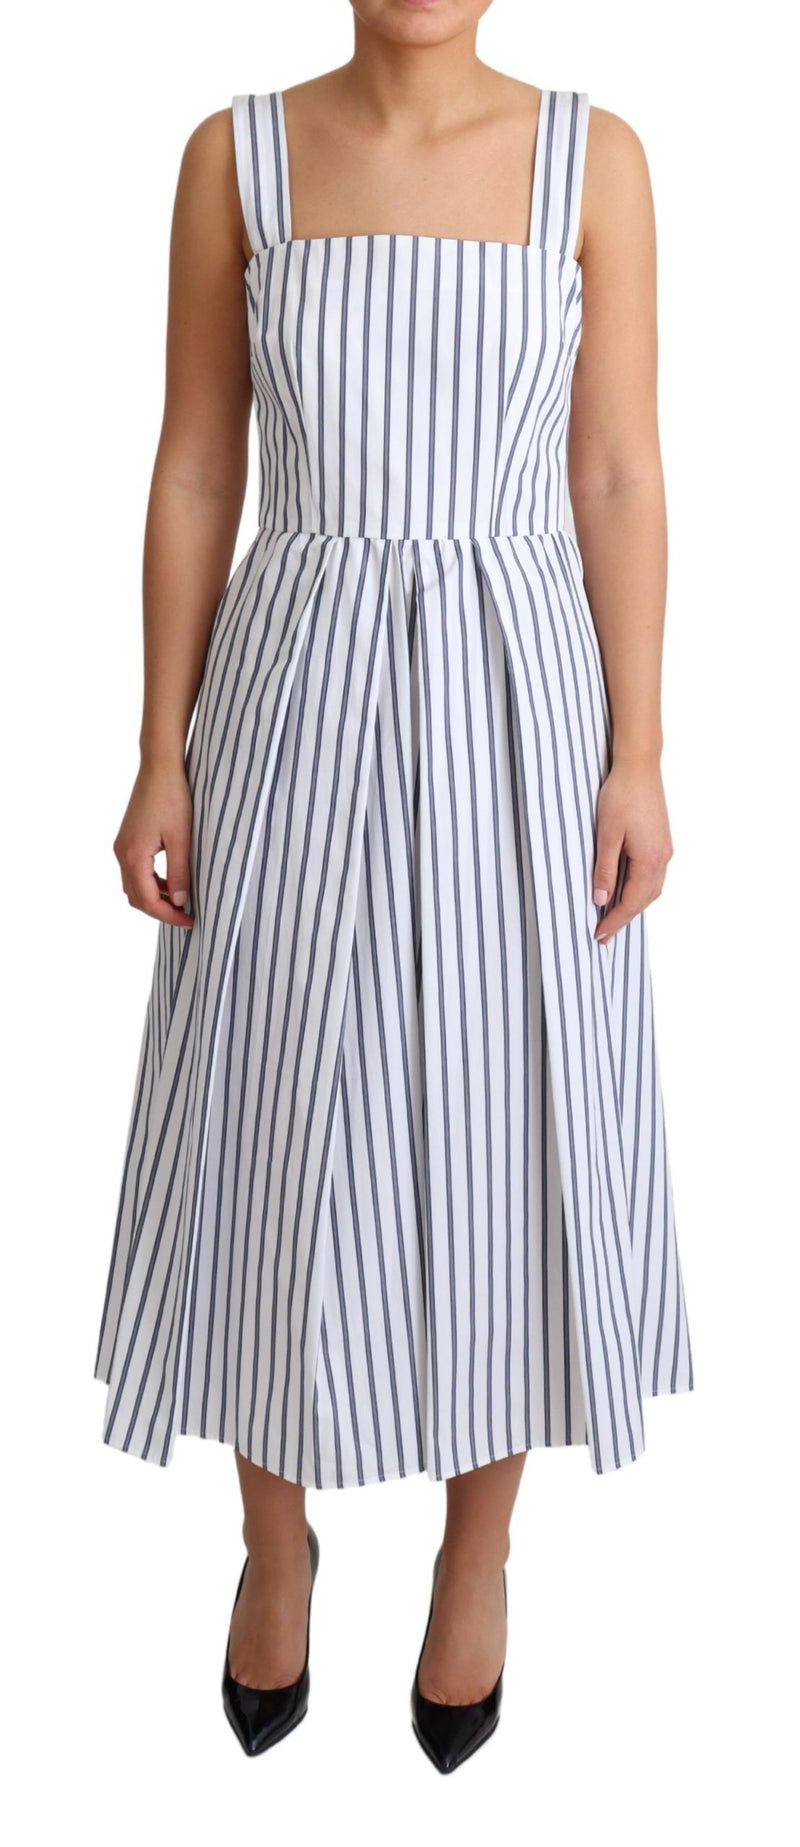 White Blue Striped Cotton A-Line Dress